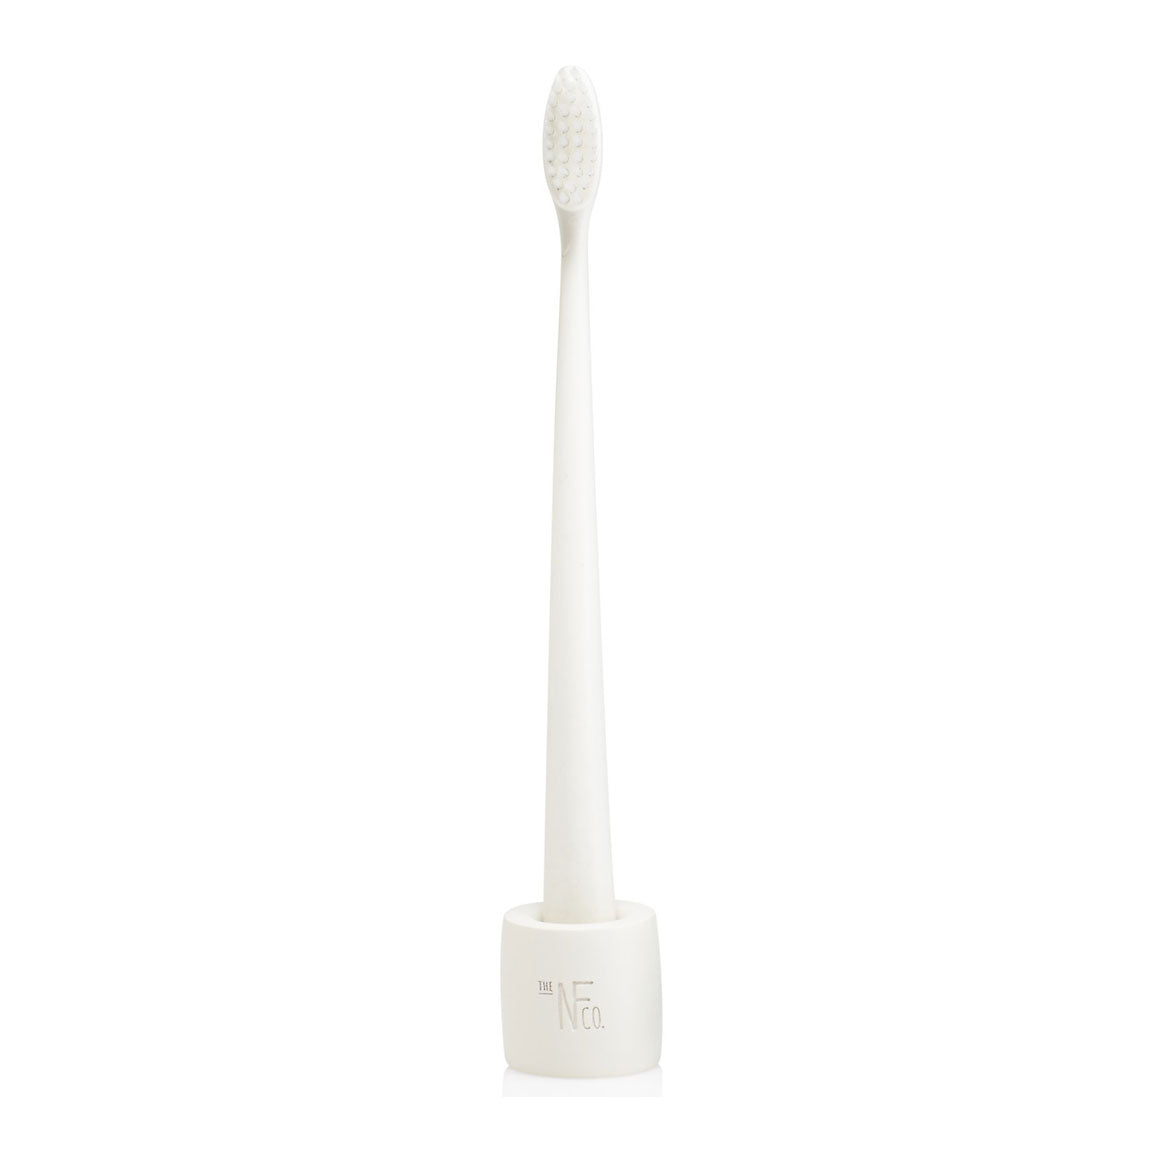 Bio Toothbrush & Stand - Ivory Desert